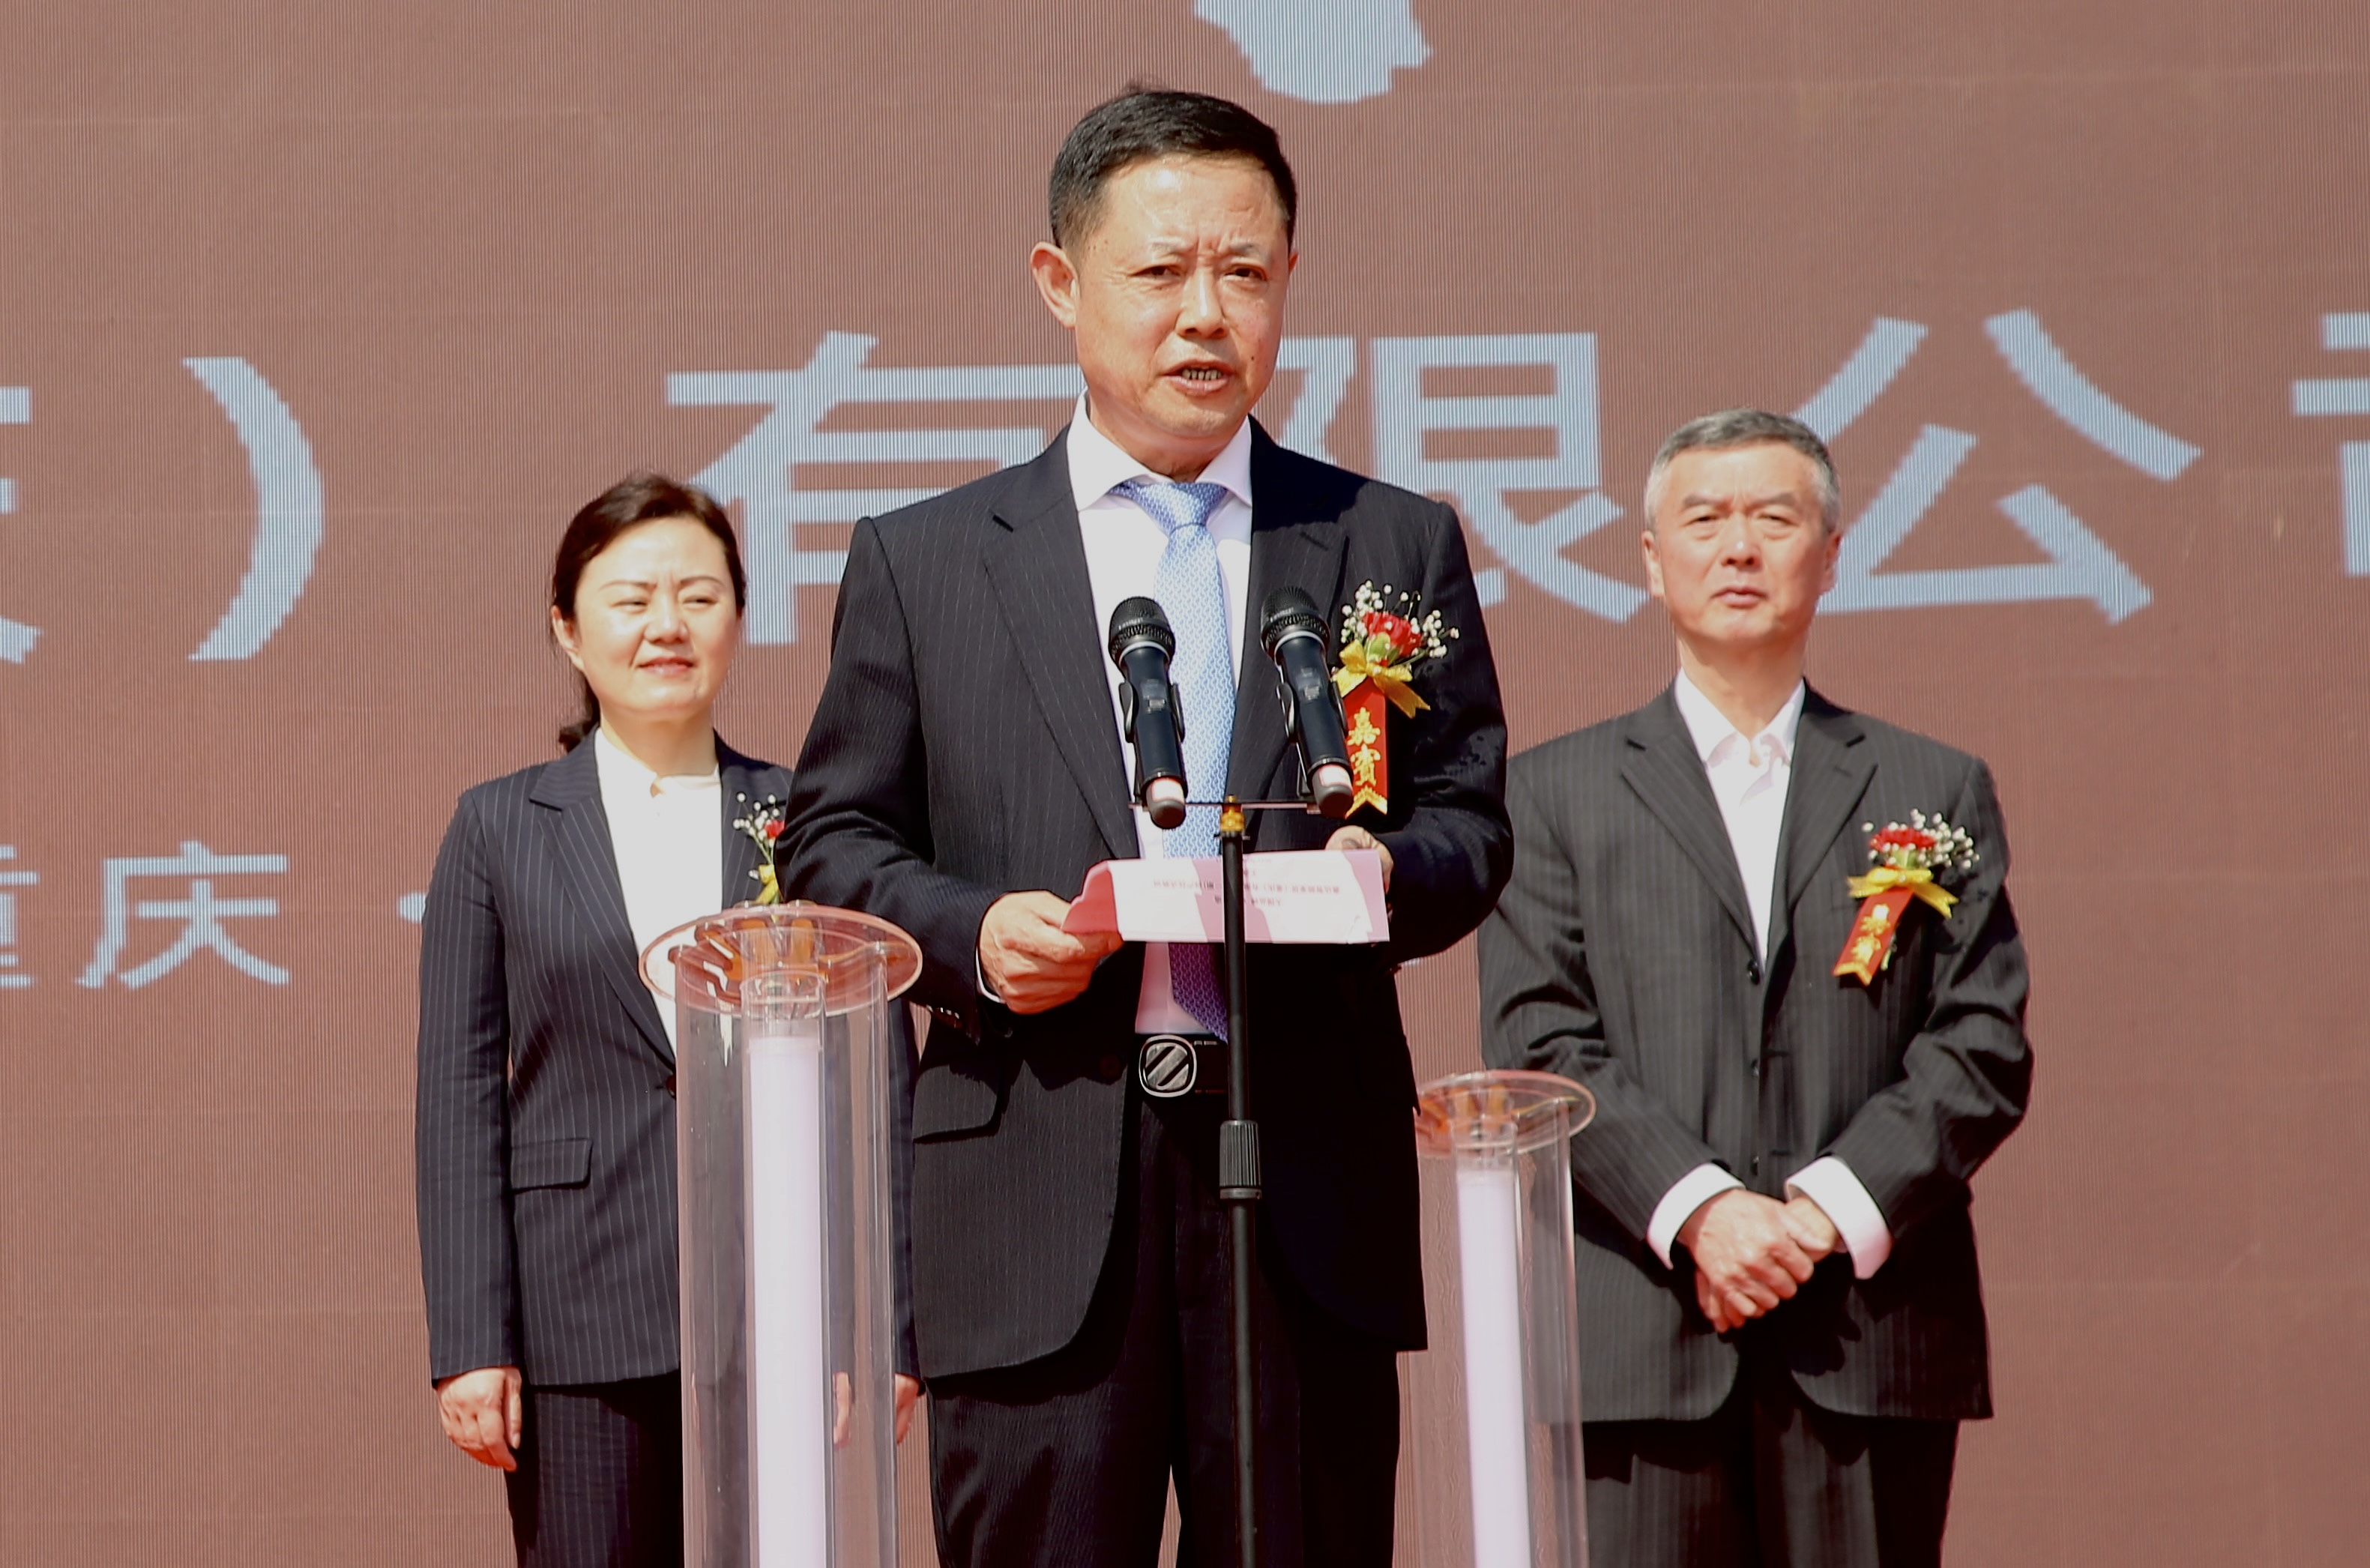 惠达智能家居5G+数智化工厂投产仪式在重庆盛大举行，展现“大国品牌 中国智造”